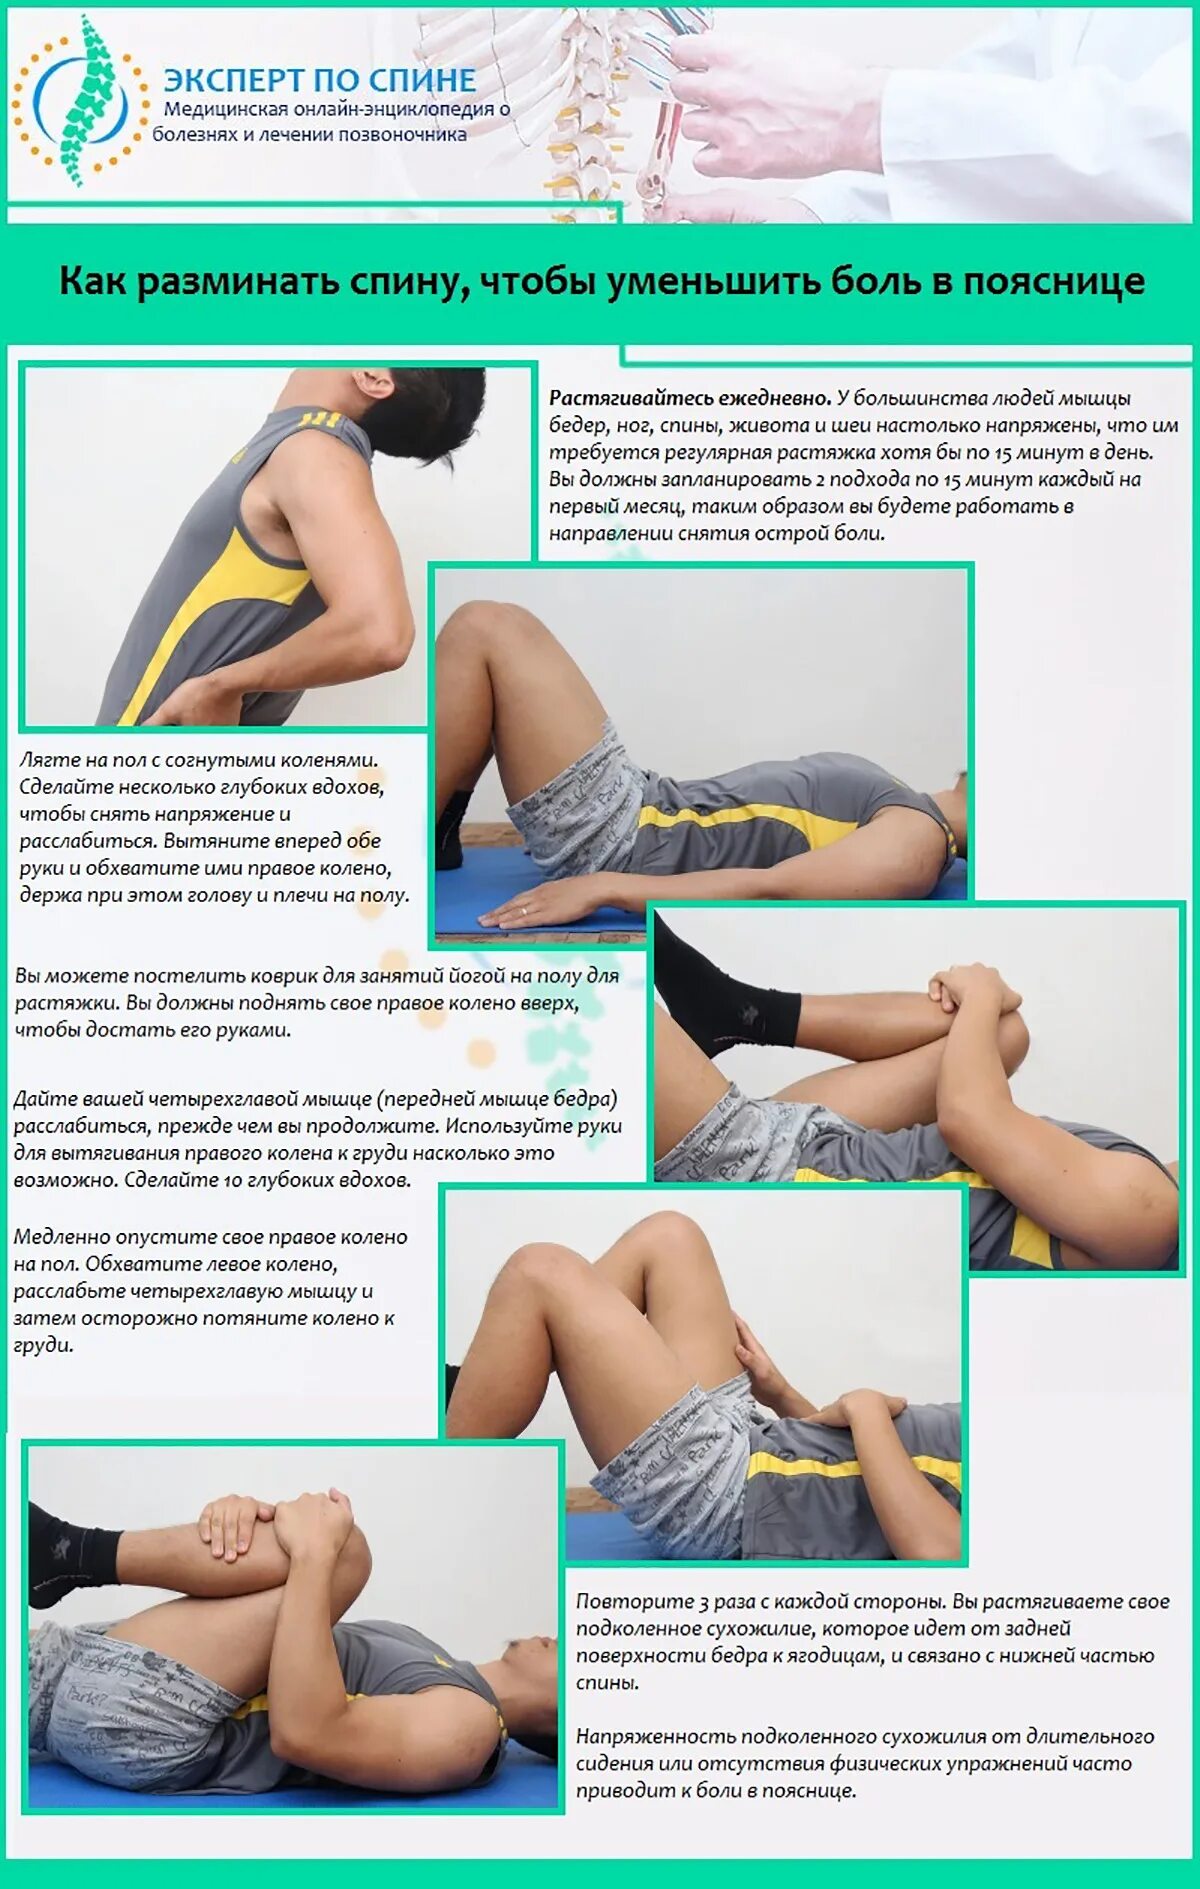 Можно делать массаж спины при месячных. Упражнения для уменьшения боли в пояснице. КПК разминаьб поясницу. Положение при боли в спине. Упражнения при поясничной боли.